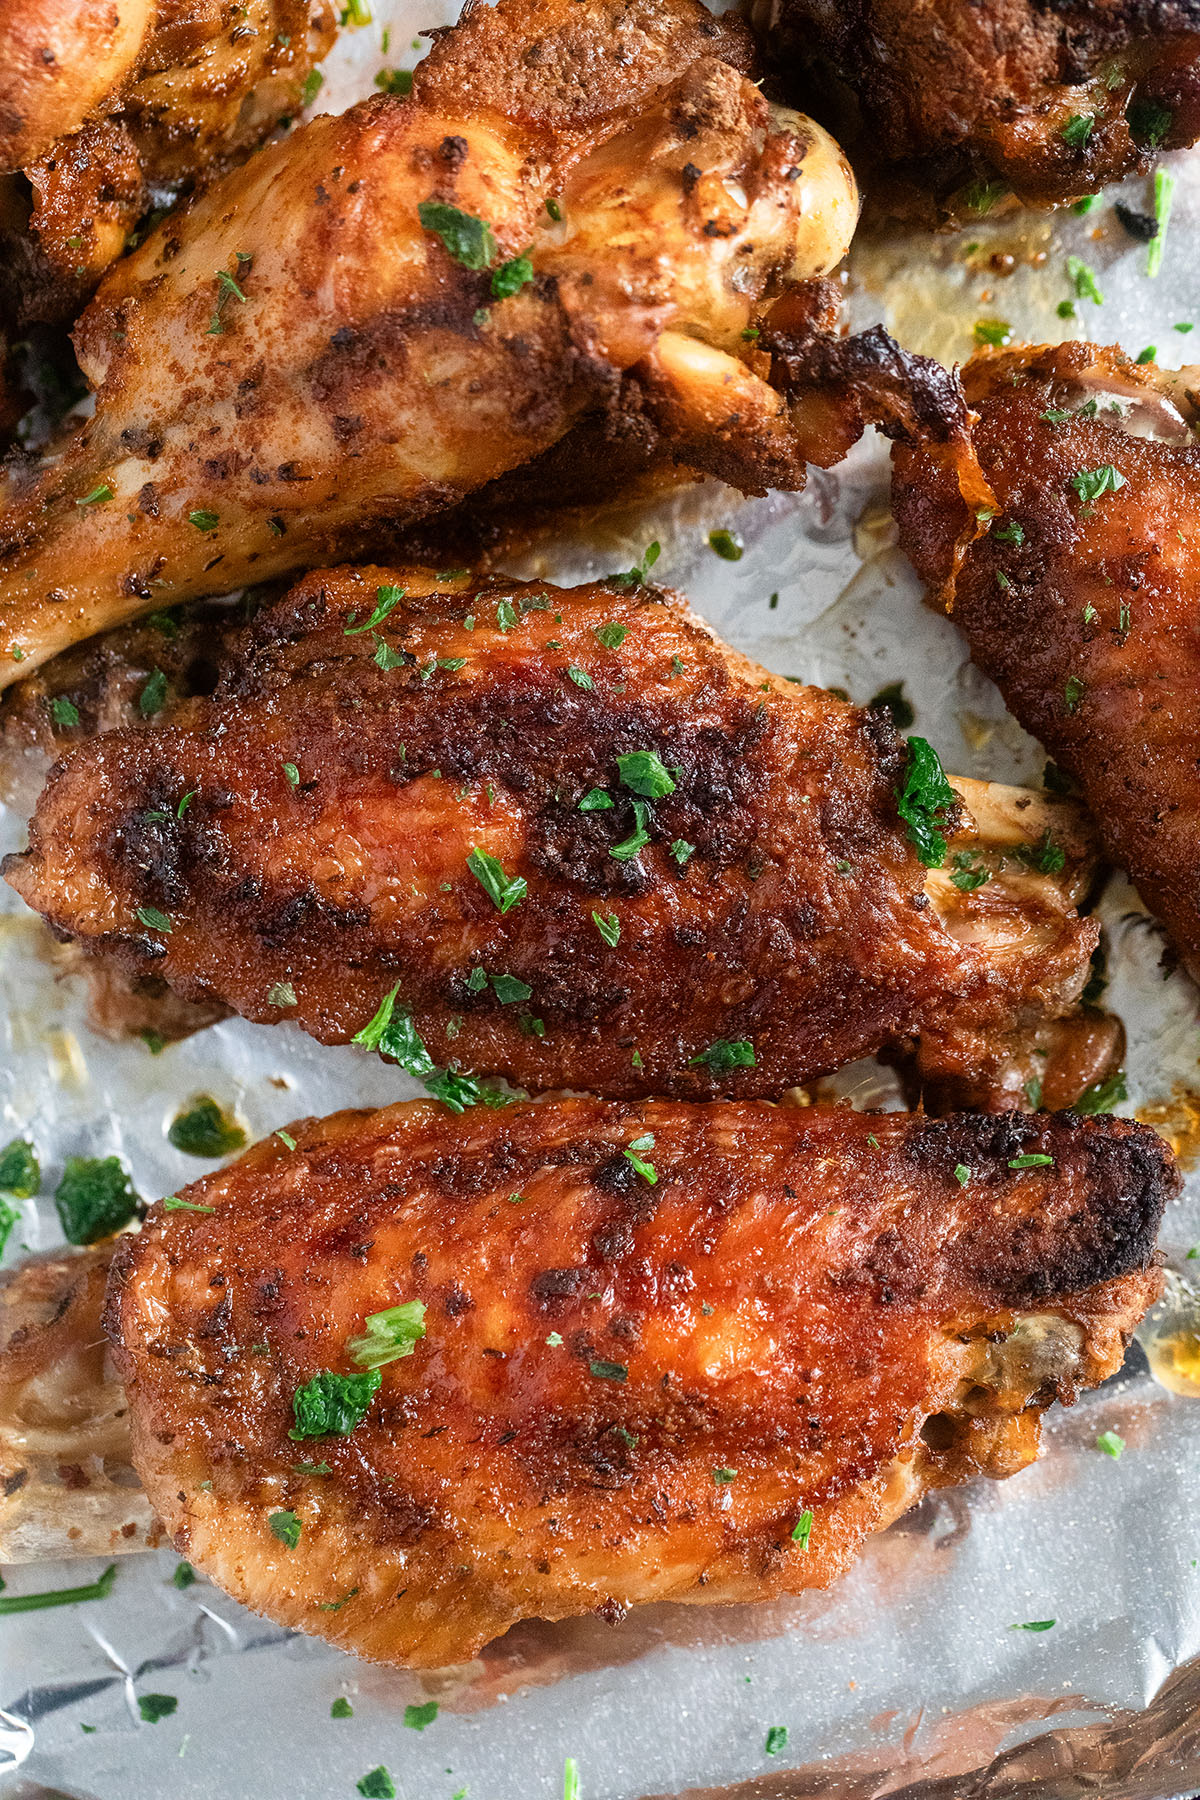 Crockpot Turkey Wings: 1 Step To Make Great Tasting Wings